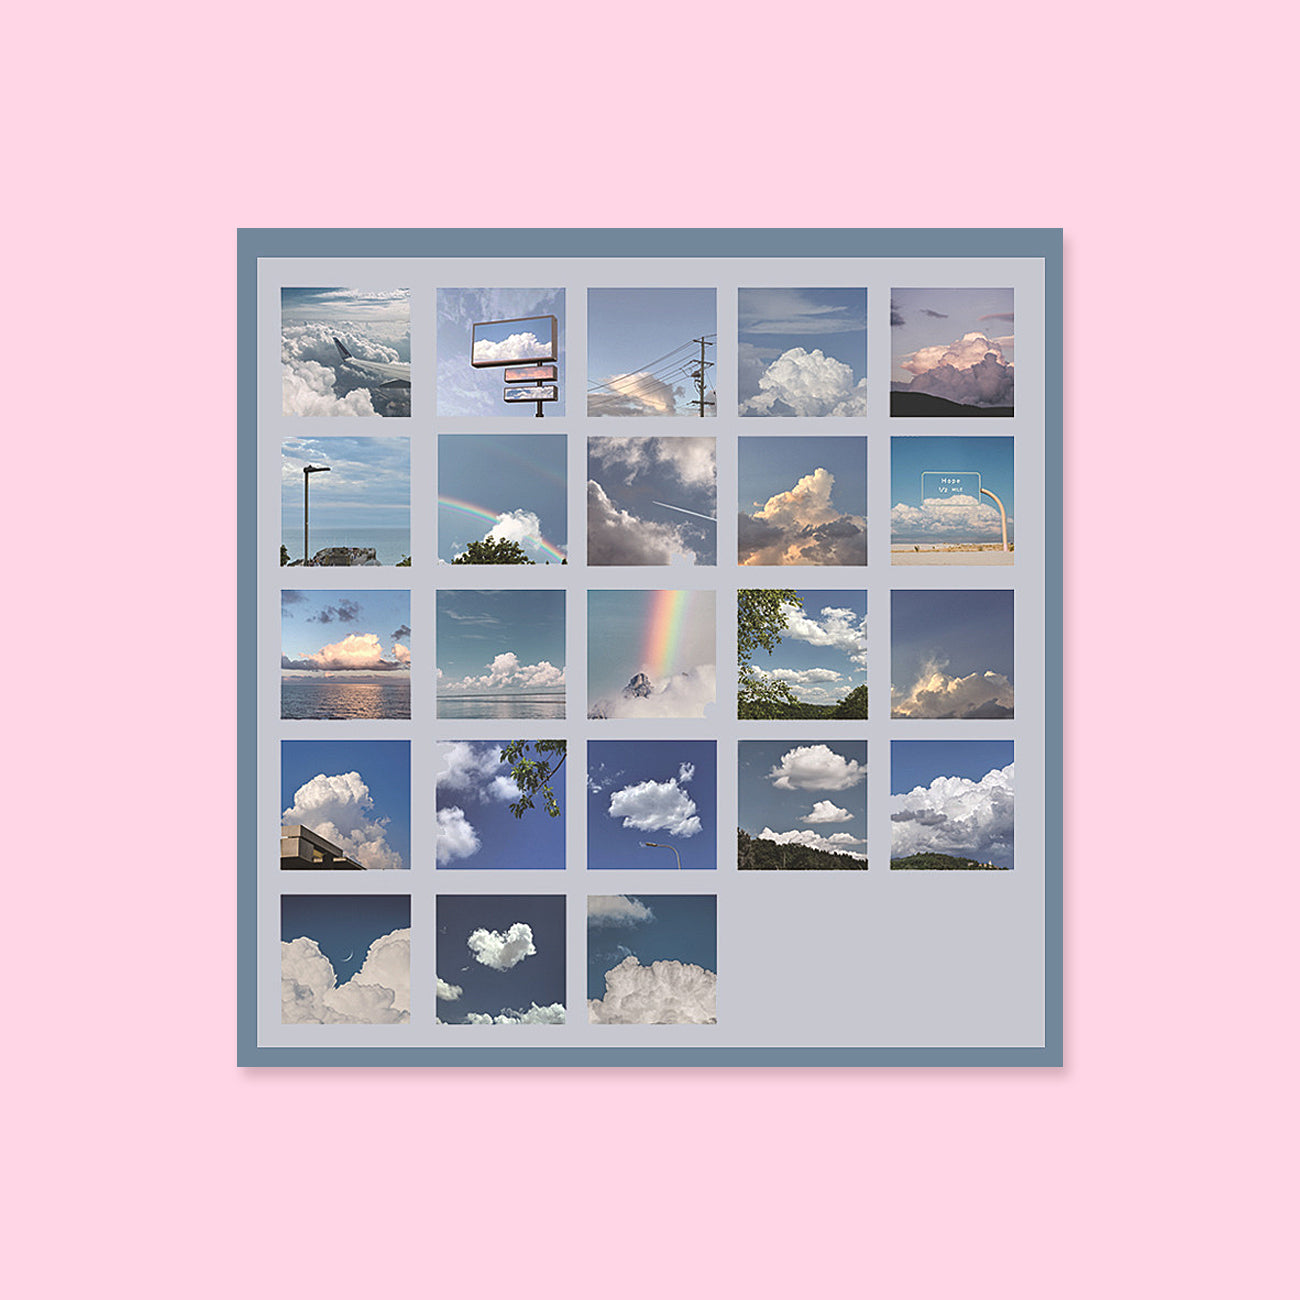 Mini Sticker Pad - The Vast Clear Sky